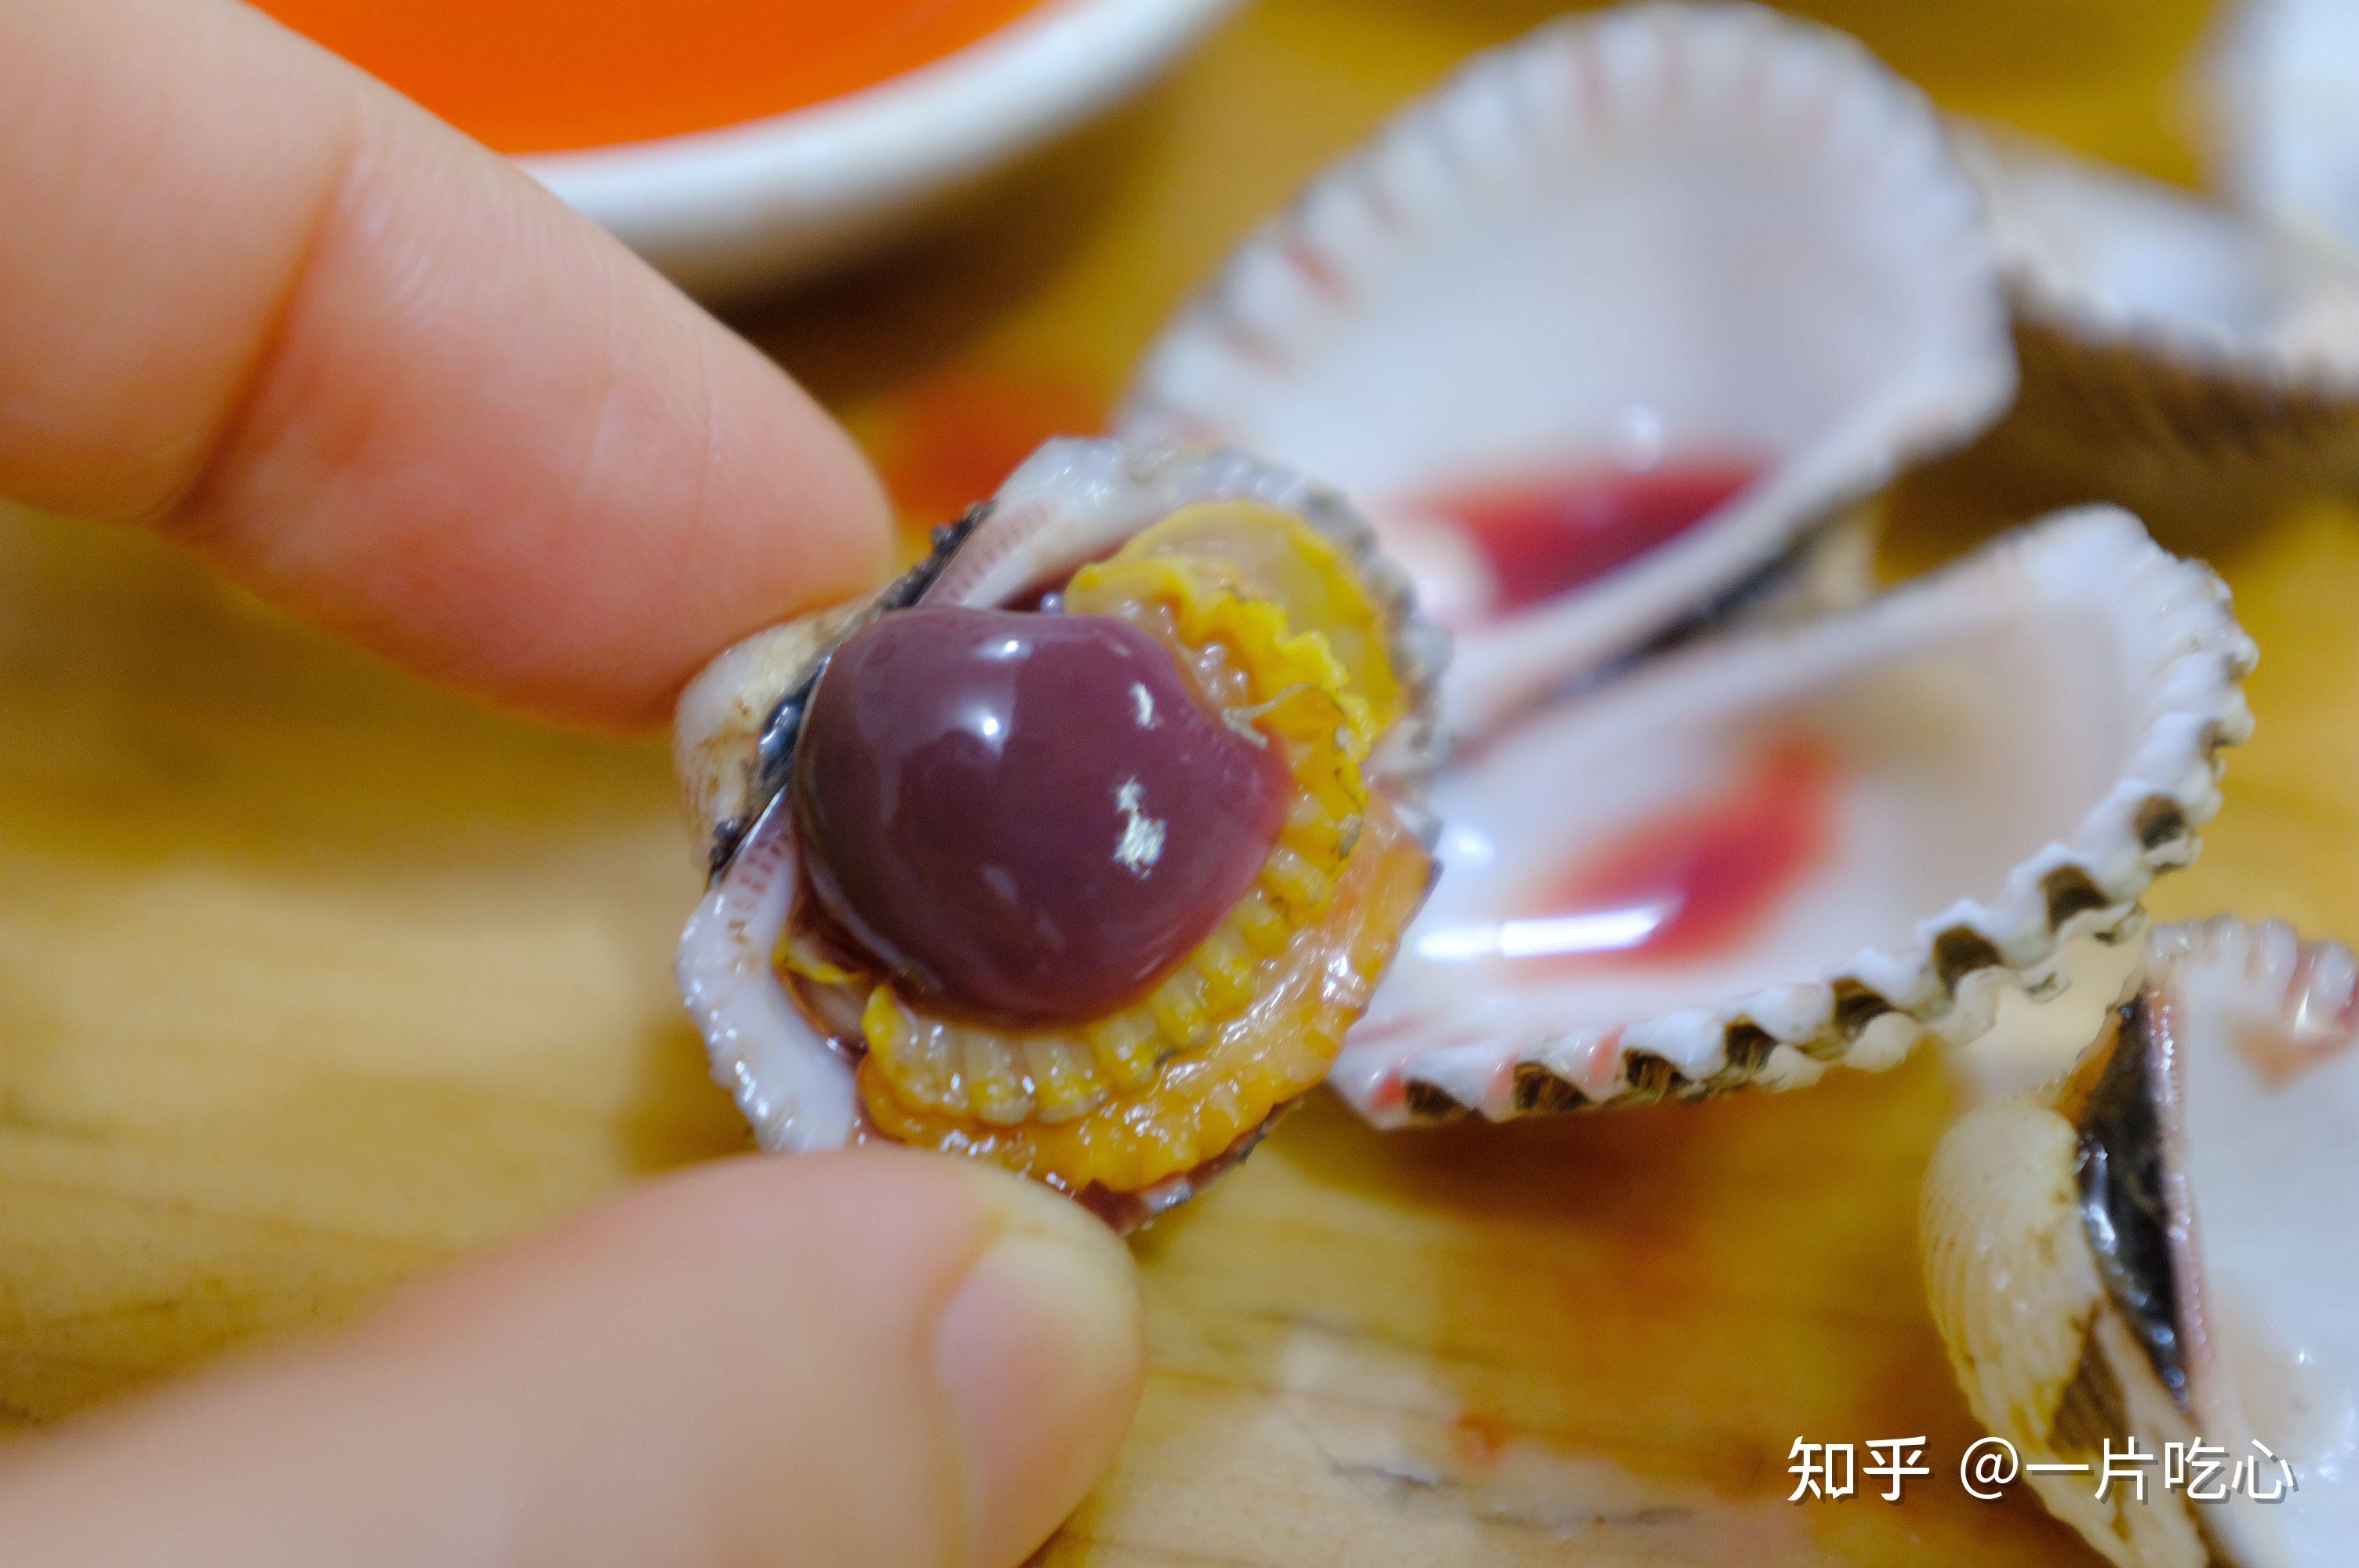 威海有种海鲜贝类叫毛蛤（毛蚶），味道鲜美，吃它需要点勇气_生活_菠菜_污染